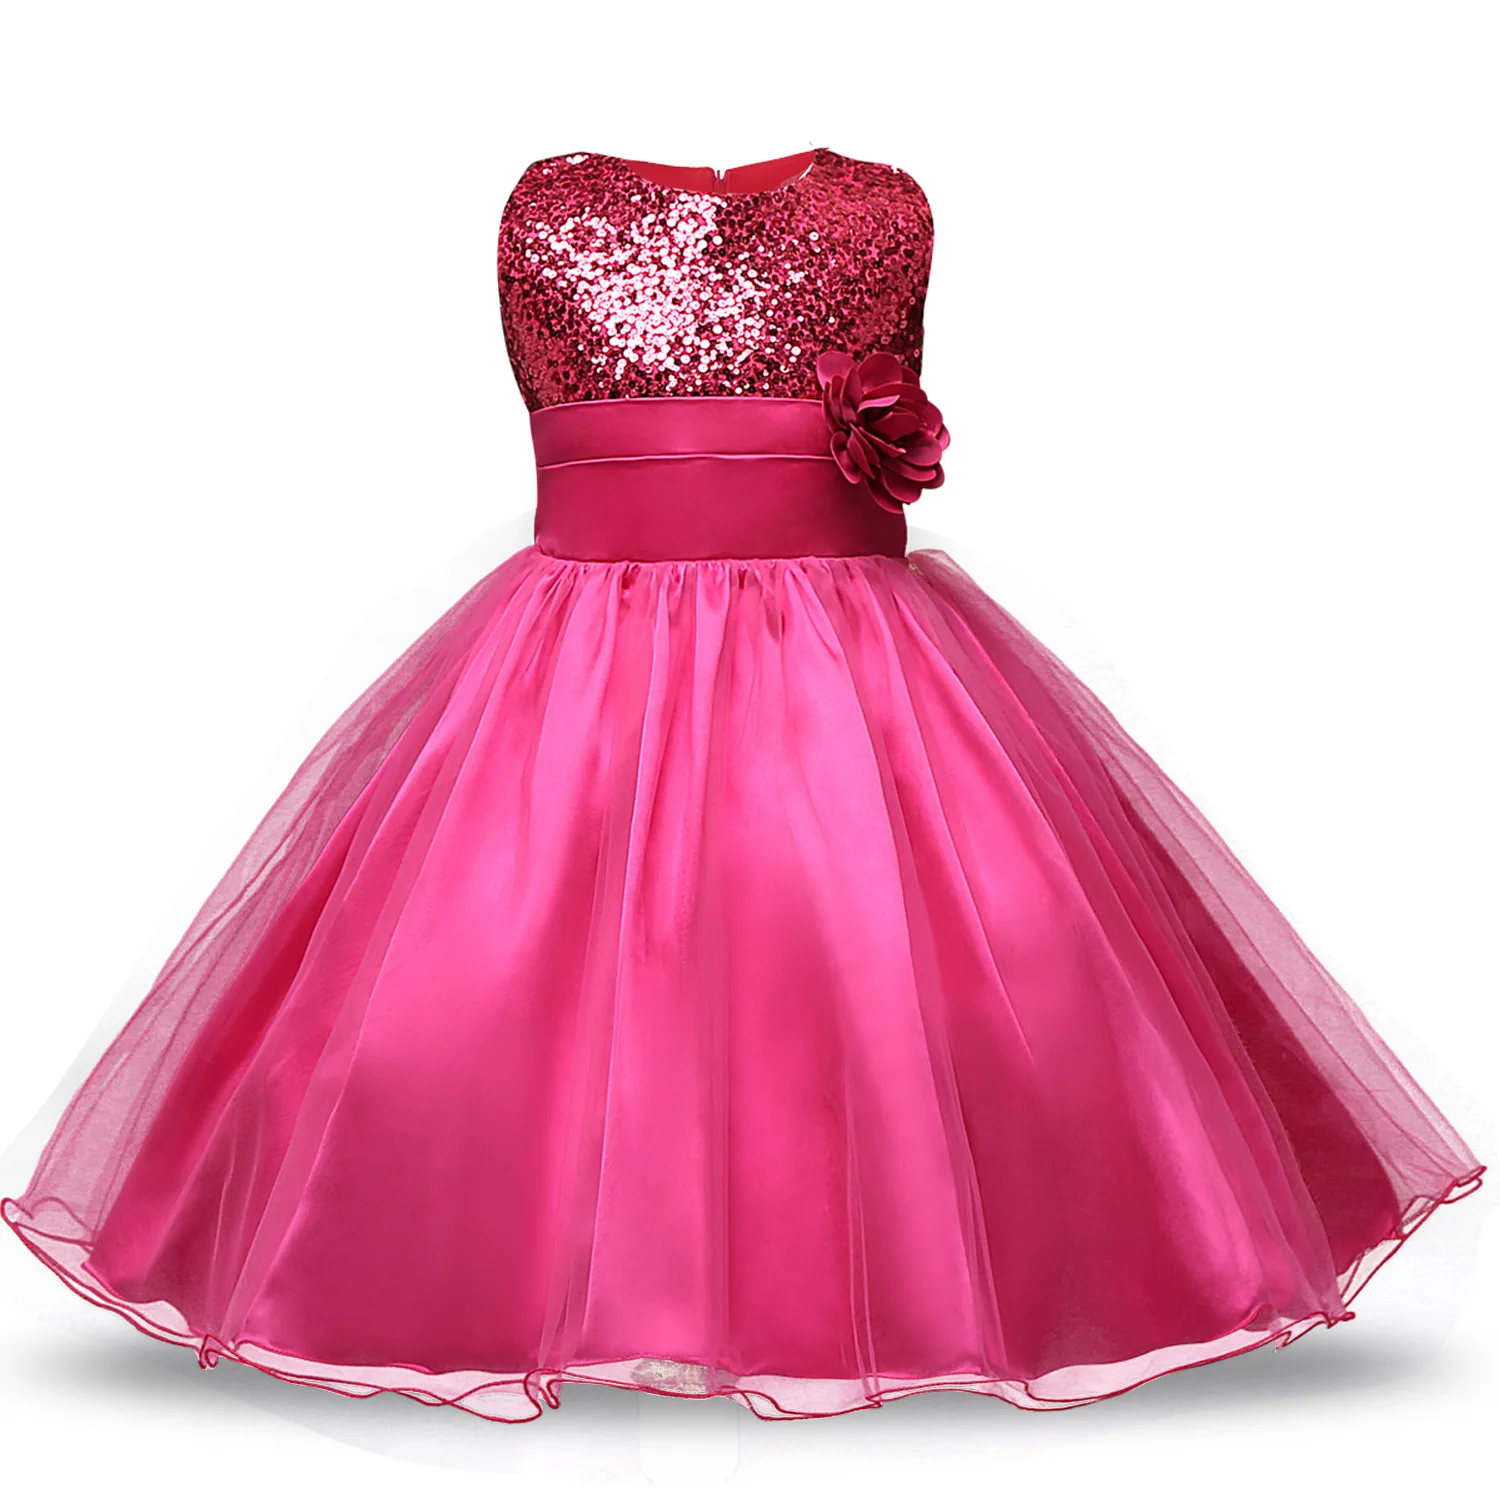 Платье с цветочным узором для девочек платье принцессы на свадьбу, день рождения, Рождество, платья для девочек, детский костюм Новогодняя одежда для детей возрастом от 3 до 8 лет